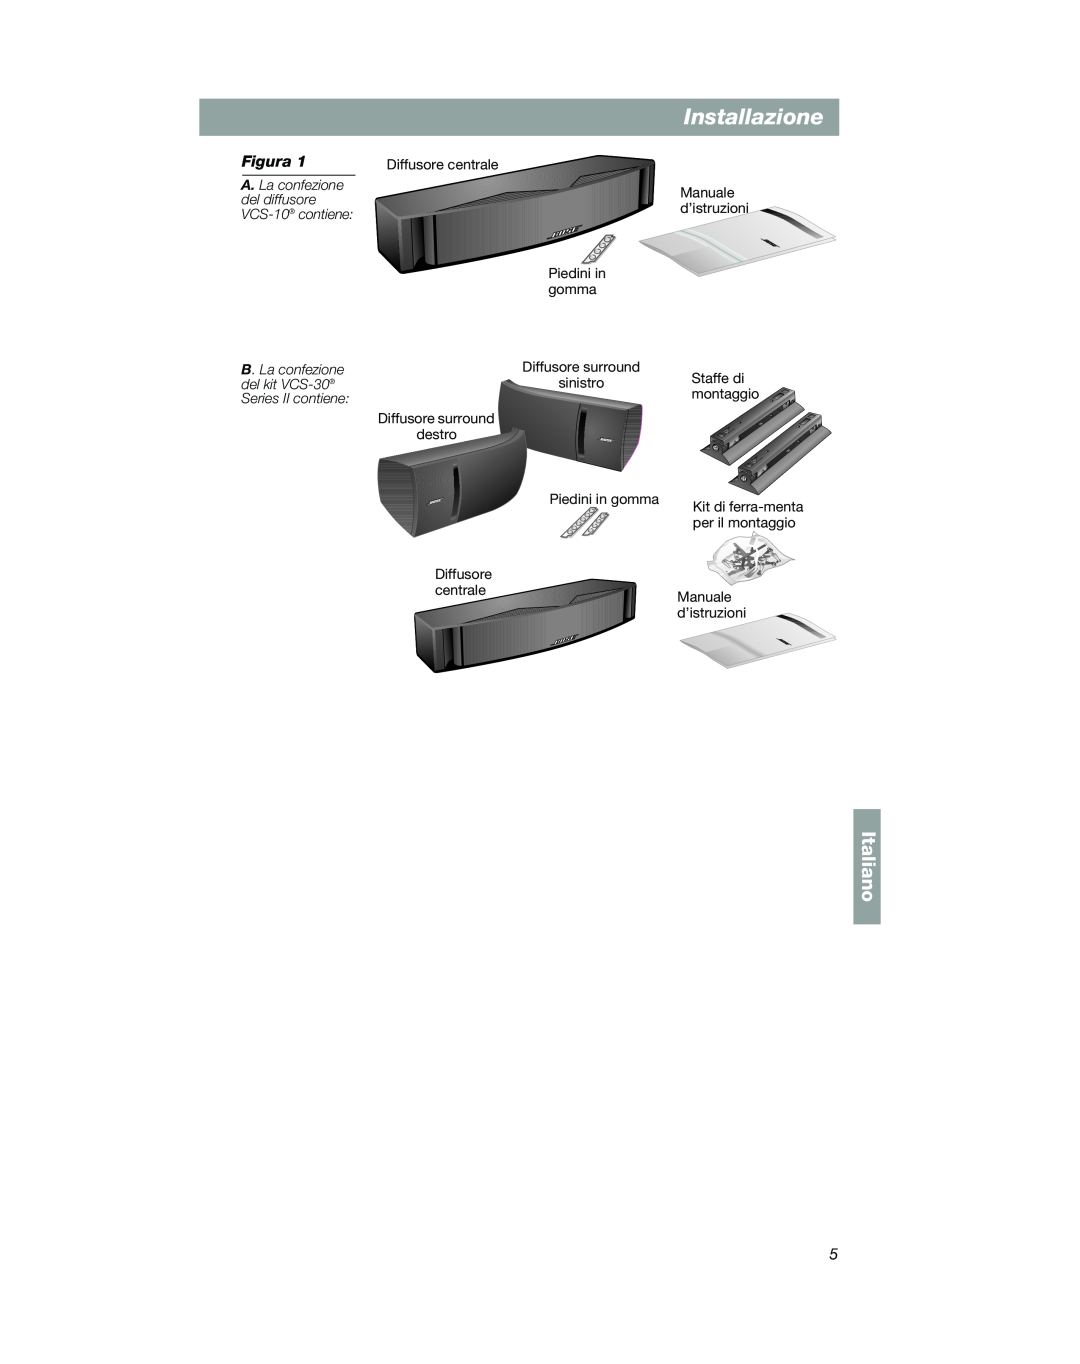 Bose VCS-10 manual Installazione, Italiano, Diffusore centrale Piedini in gomma 